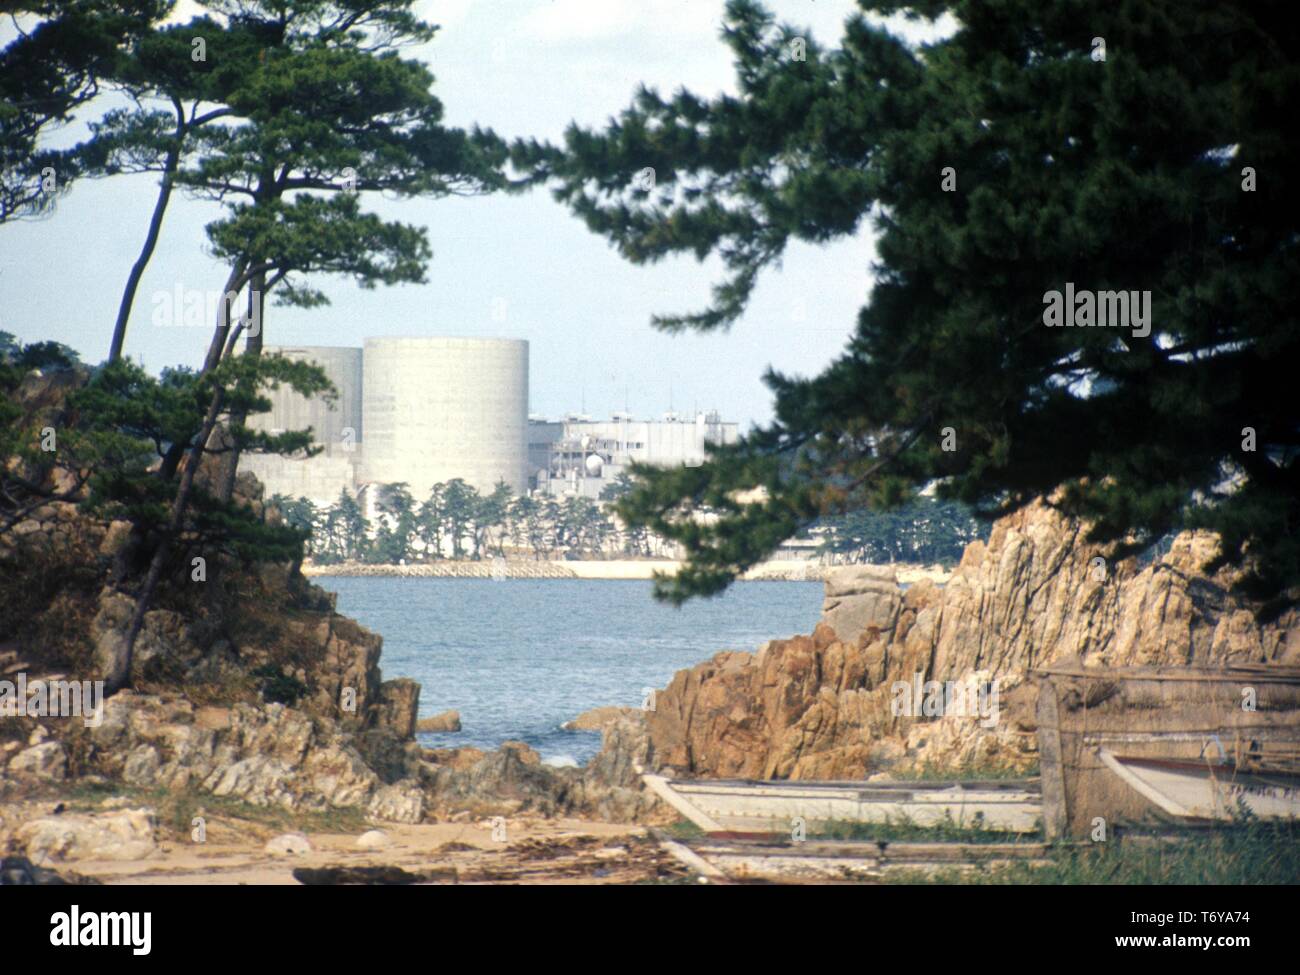 Verdeckt auf Atomkraftwerk Mihama, mit Nyunoura Bay, Kiefern, Felsen, und Fischerboote im Vordergrund, Mihama, Japan, 1970. Mit freundlicher Genehmigung des US-Ministeriums für Energie. () Stockfoto